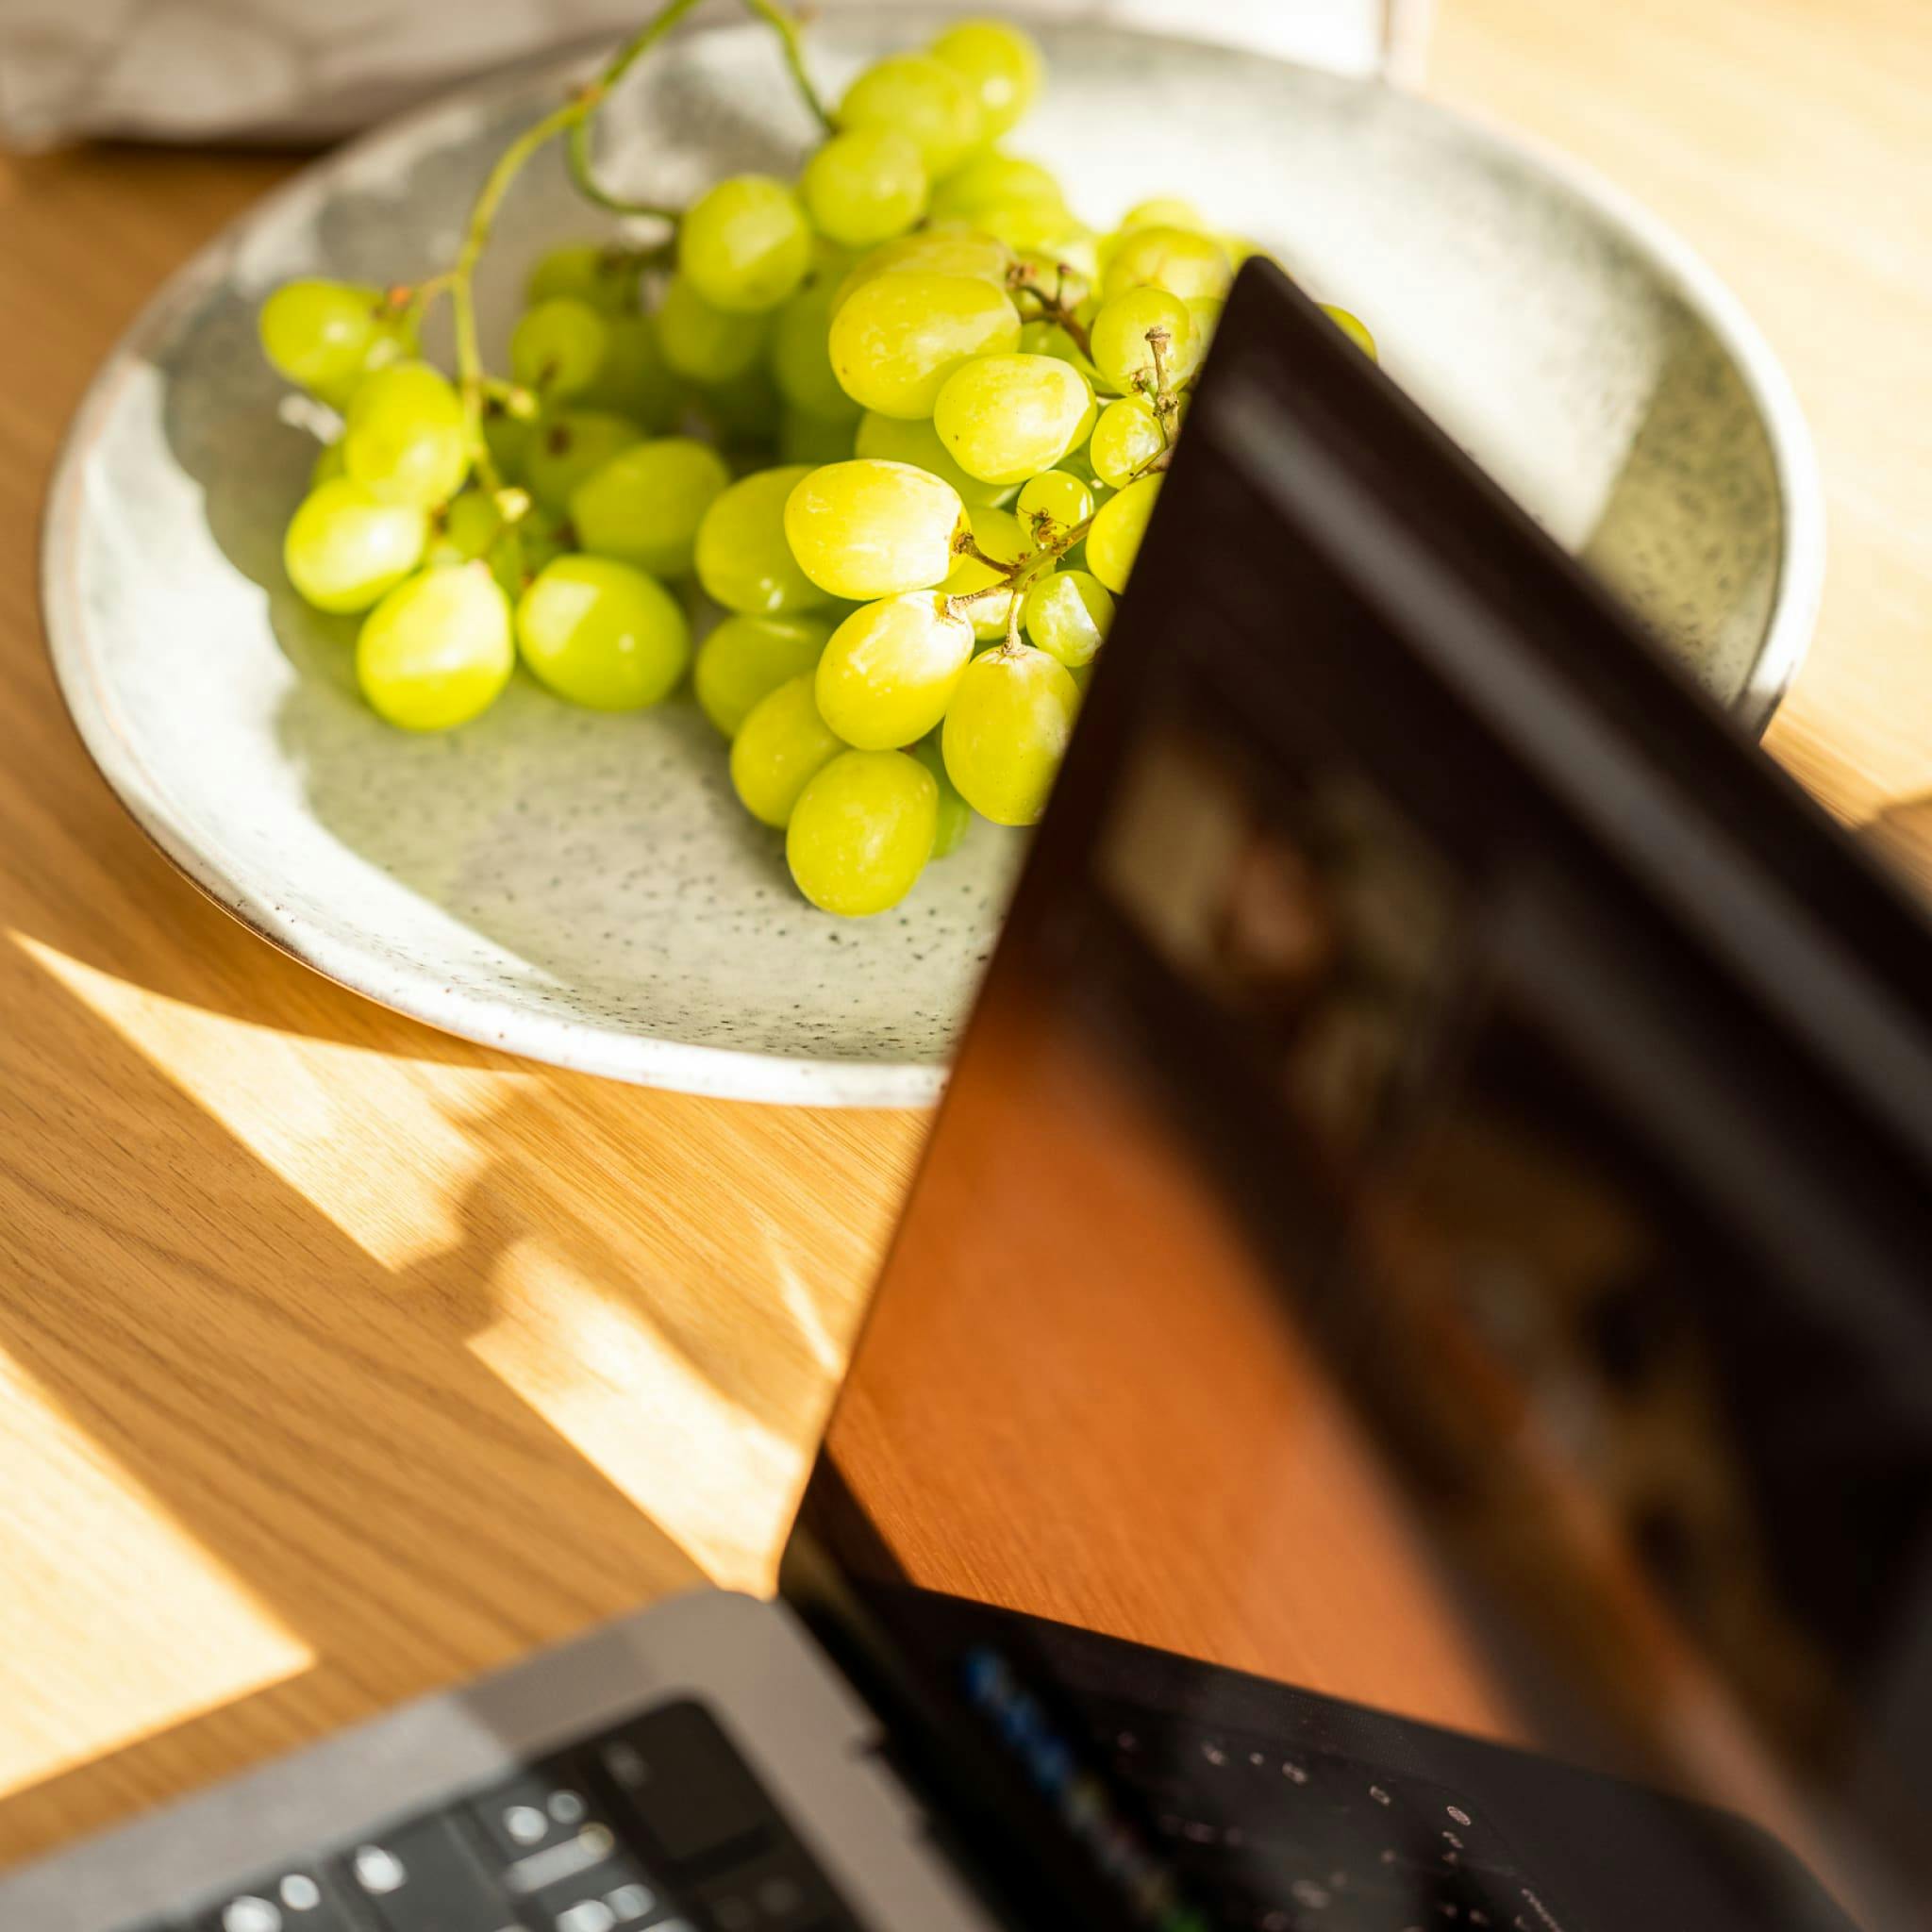 Ein Teller mit Weintrauben neben einem offenen Laptop auf einem sonnenbeschienenen Holztisch.